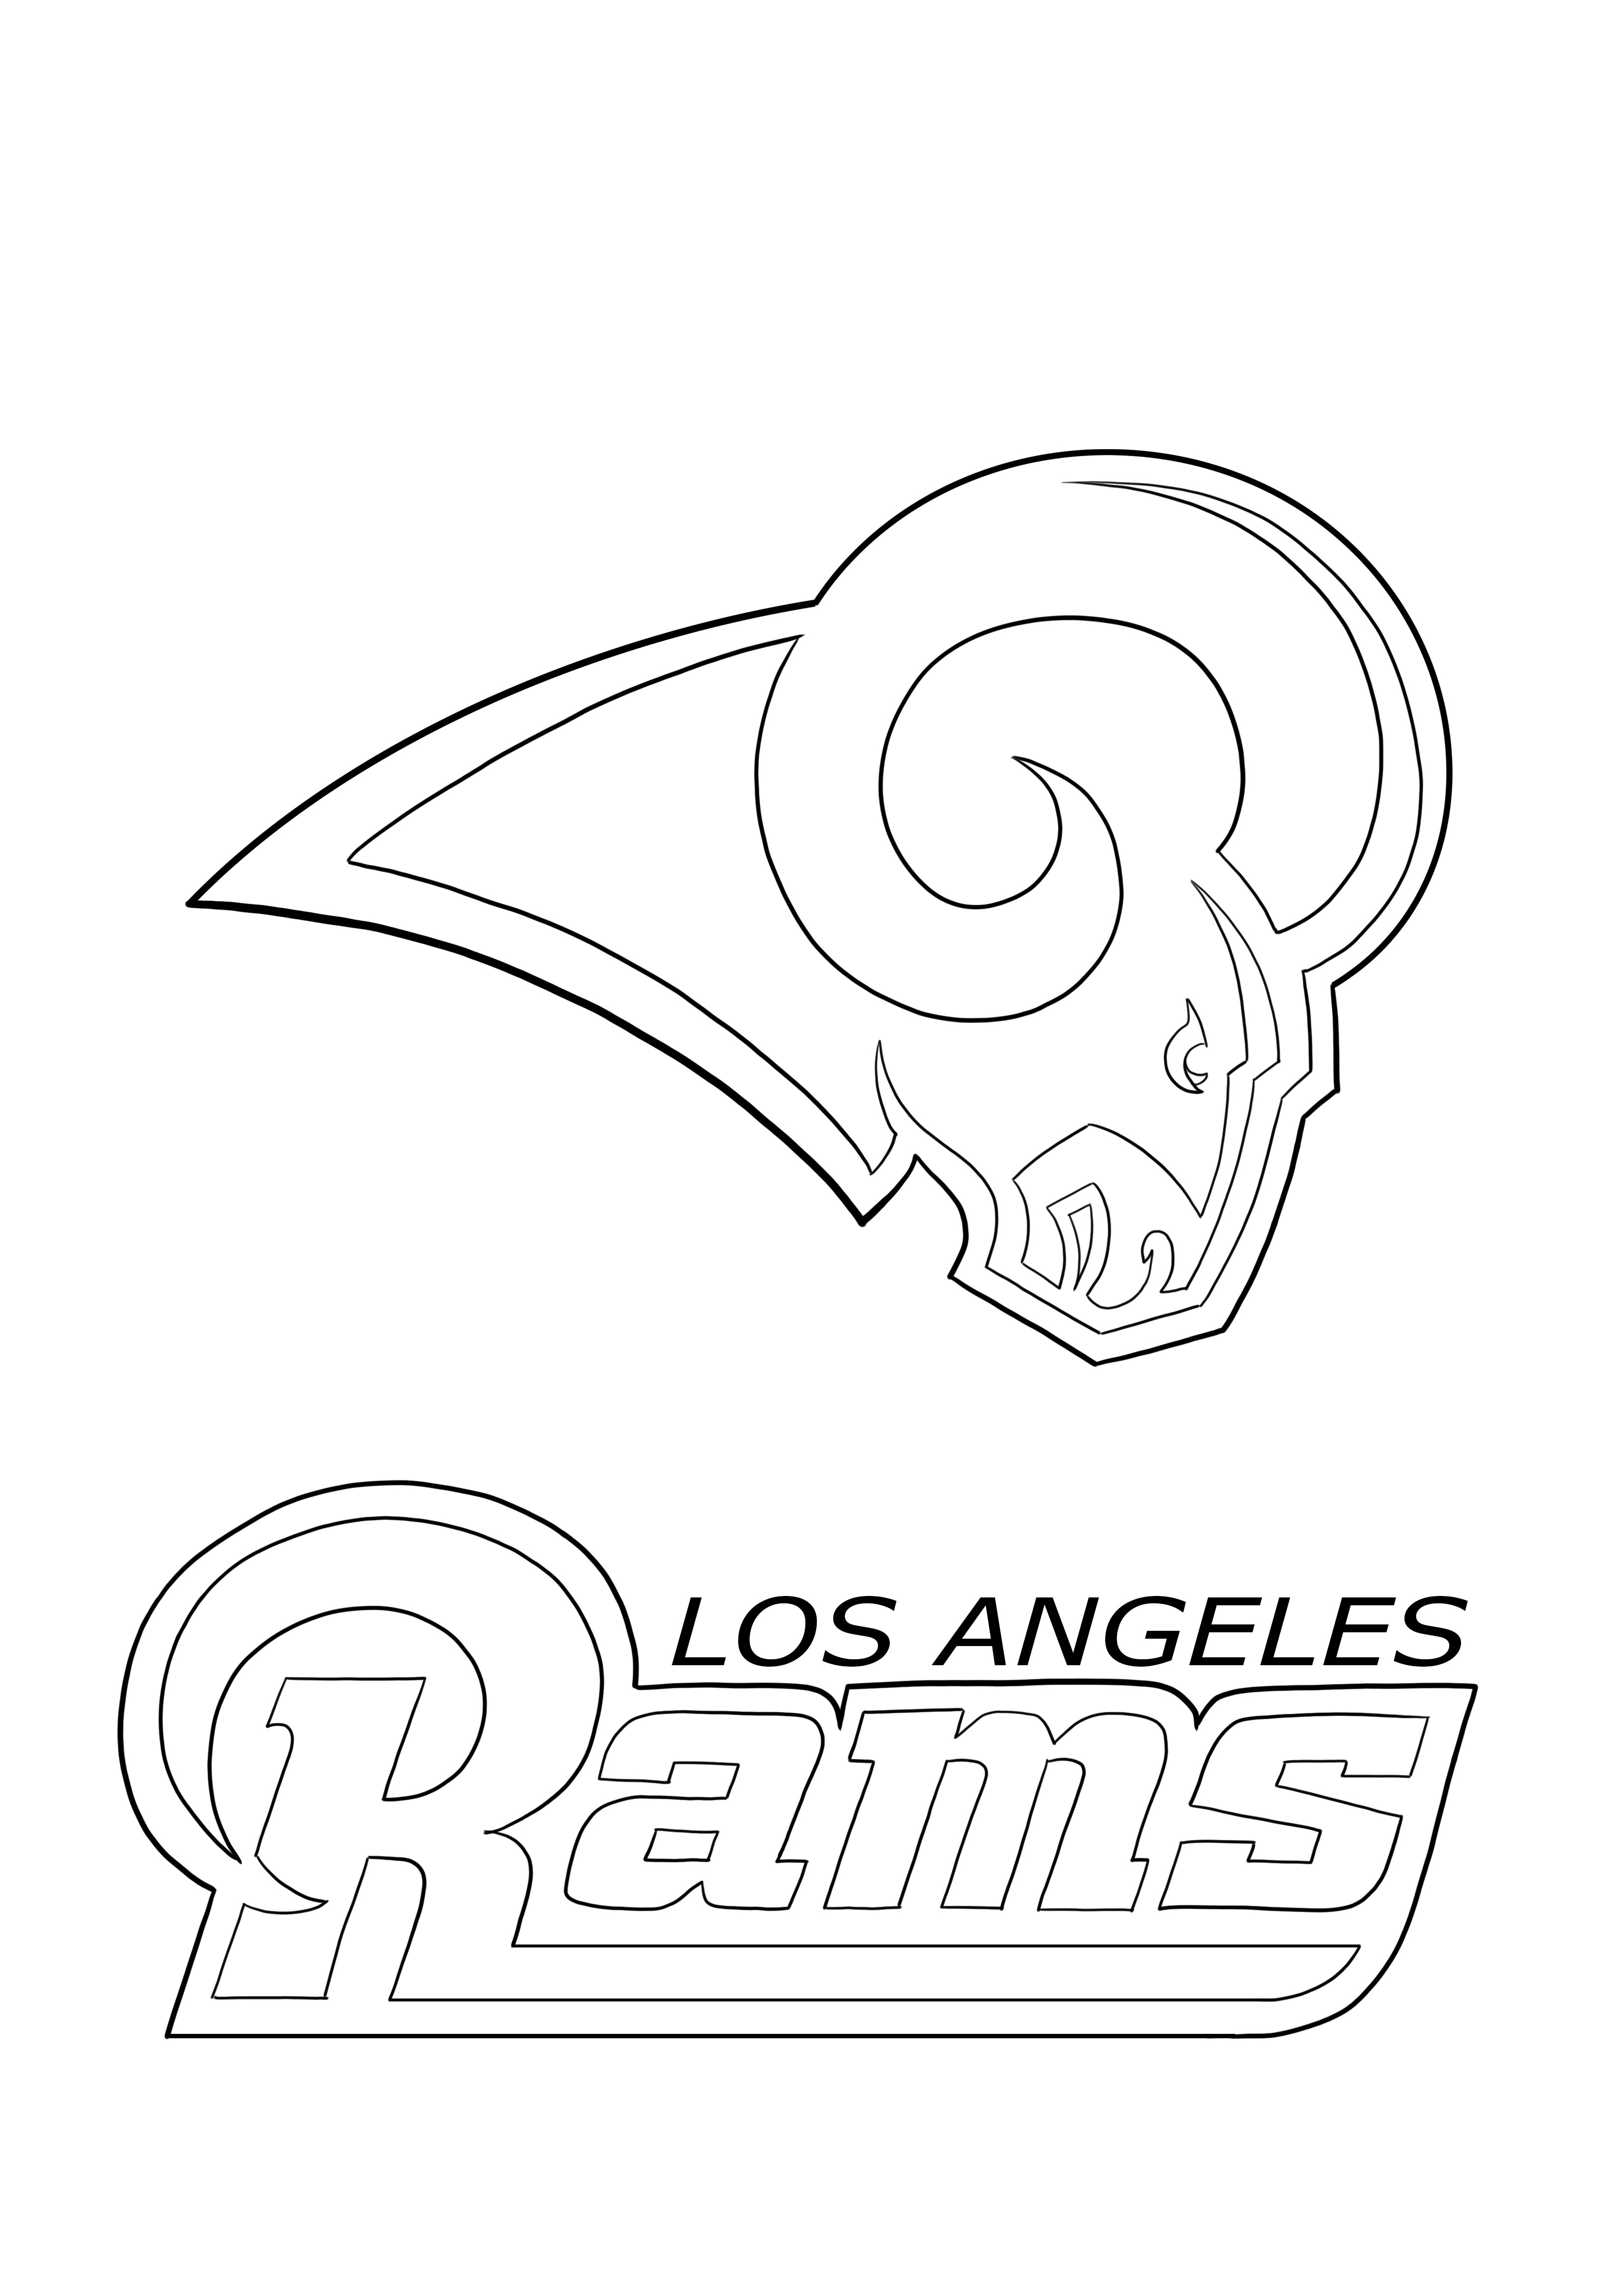 Los Angeles Rams kolorowanie i pobieranie za darmo